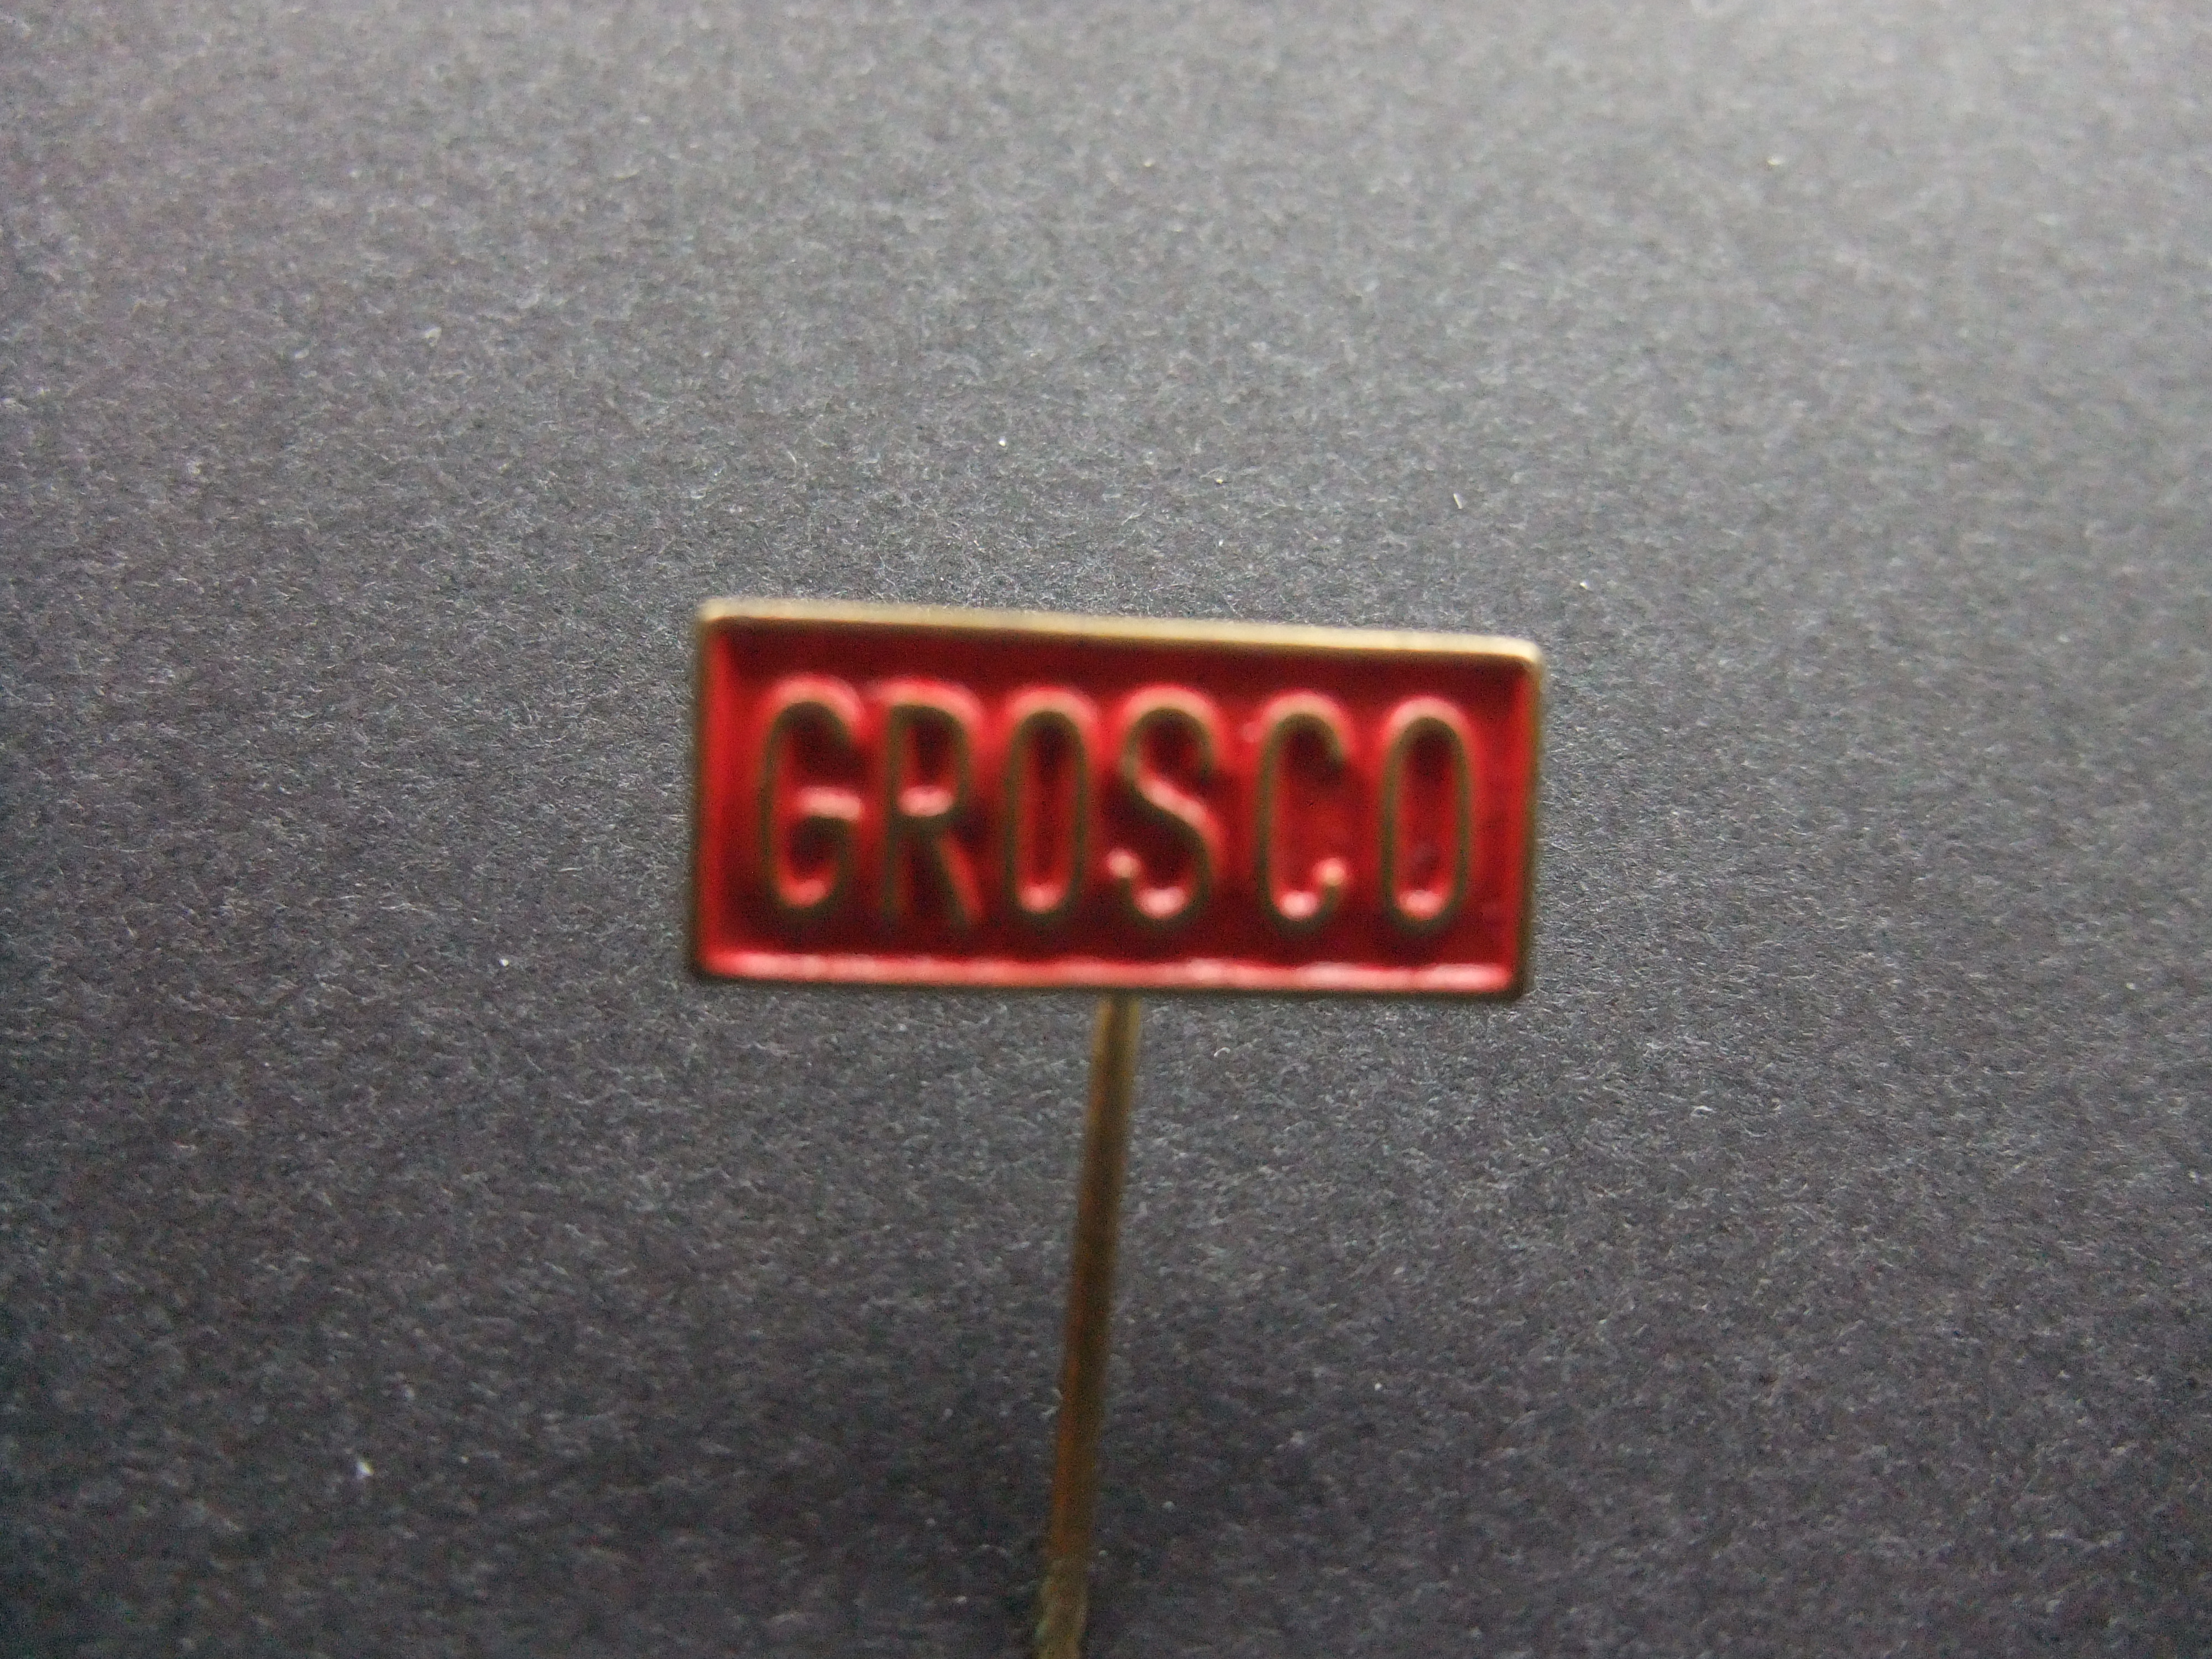 Grosco -Grossiers Combinatie huismerk winkeliers